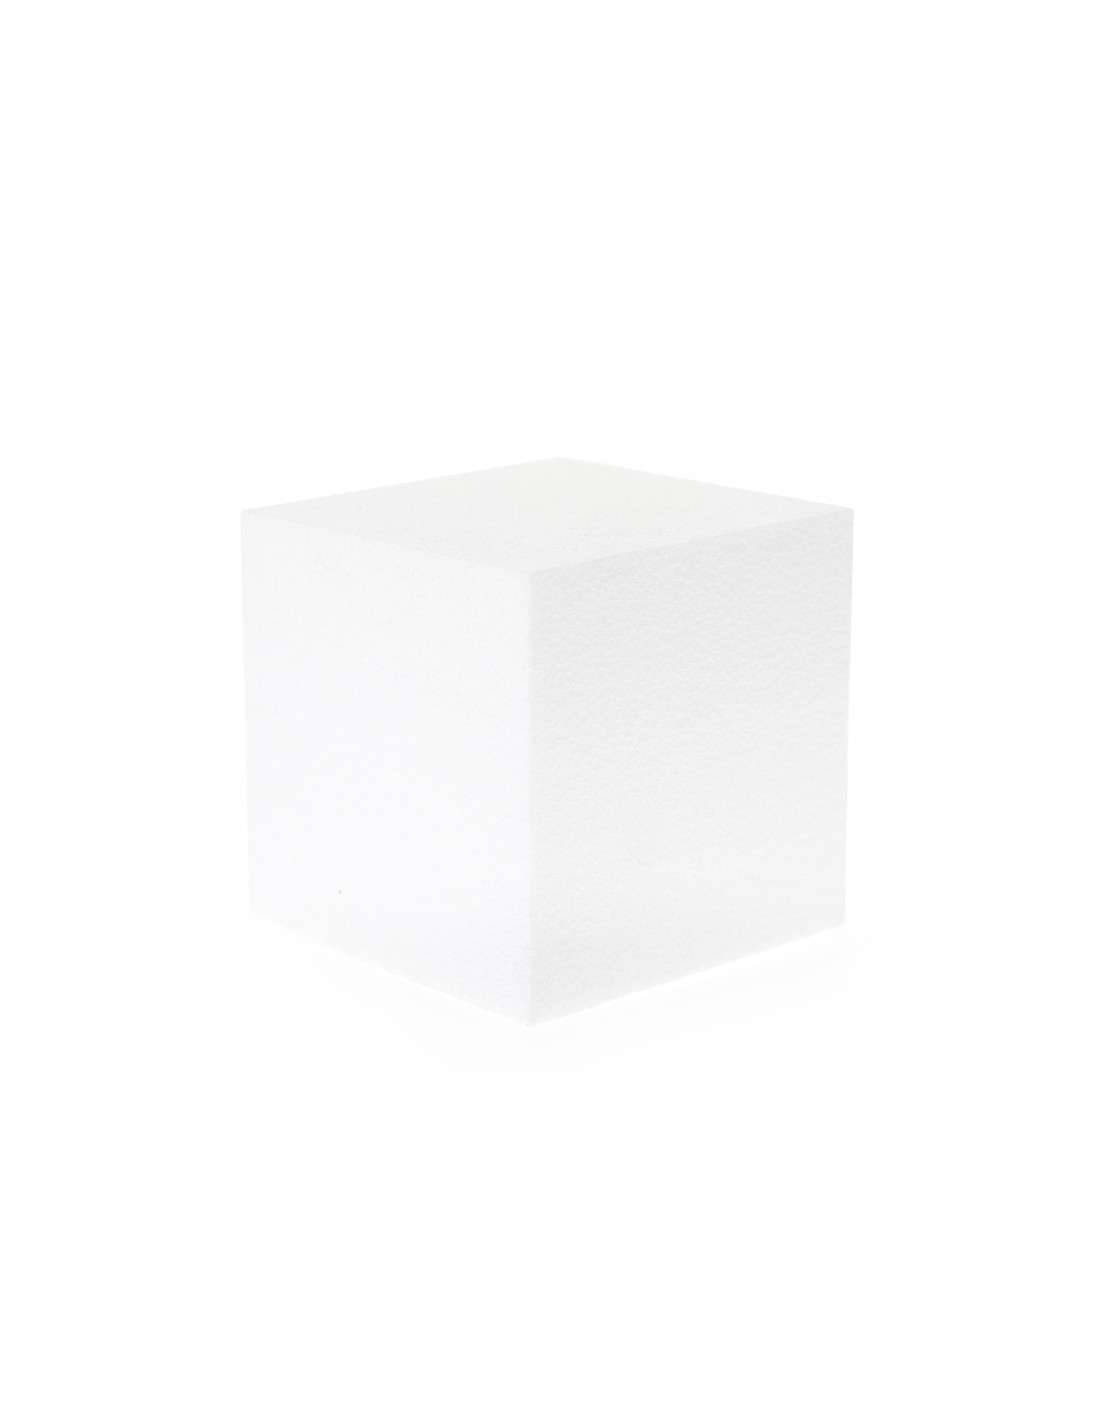 Cubos Lote de 6 Bloques pequeños de poliestireno Soporte Cuadrado para Decorar 10 cm x 10 cm